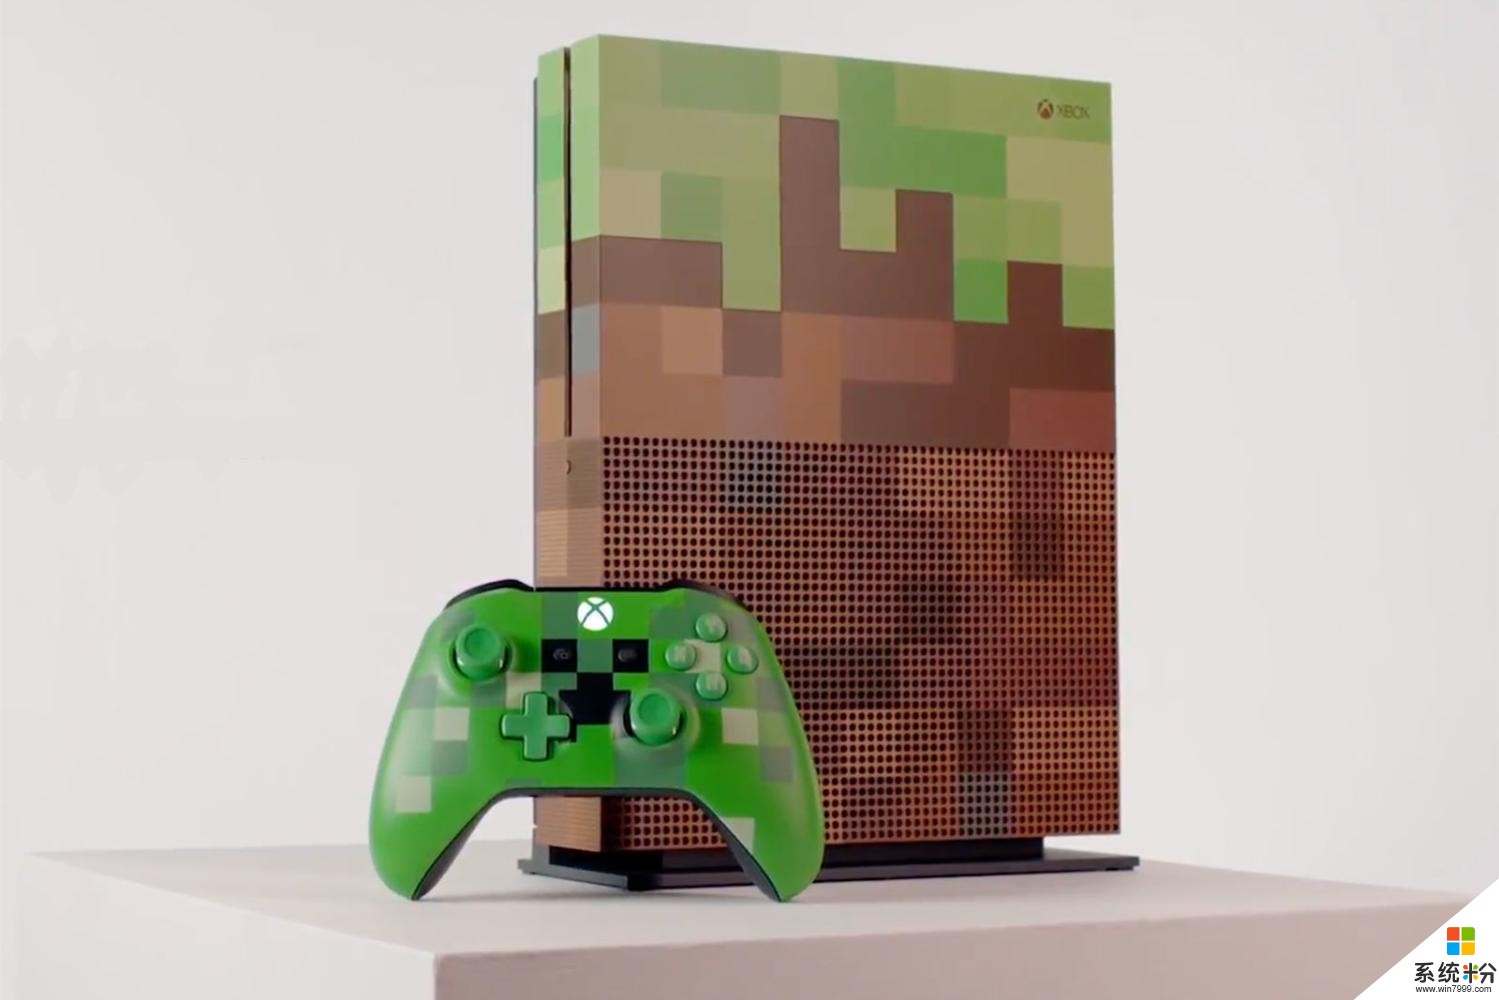 微软《Minecraft》像素风格款 Xbox One S 主机登场